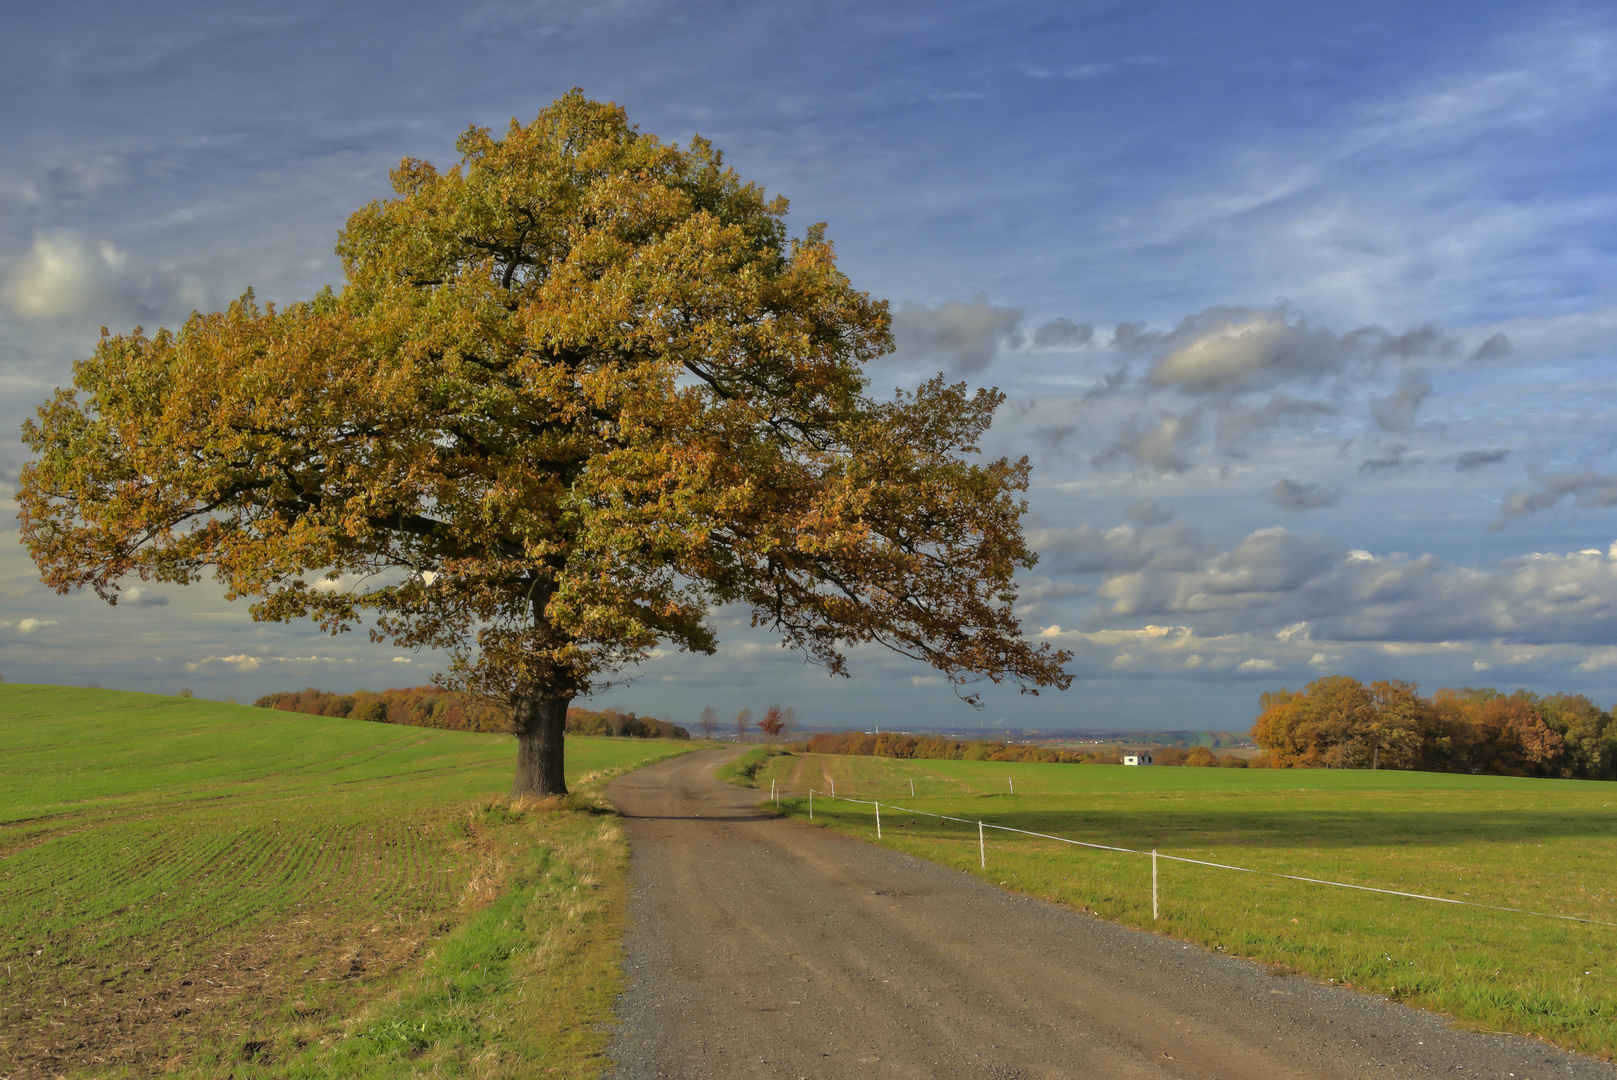 Der Baum im Herbst